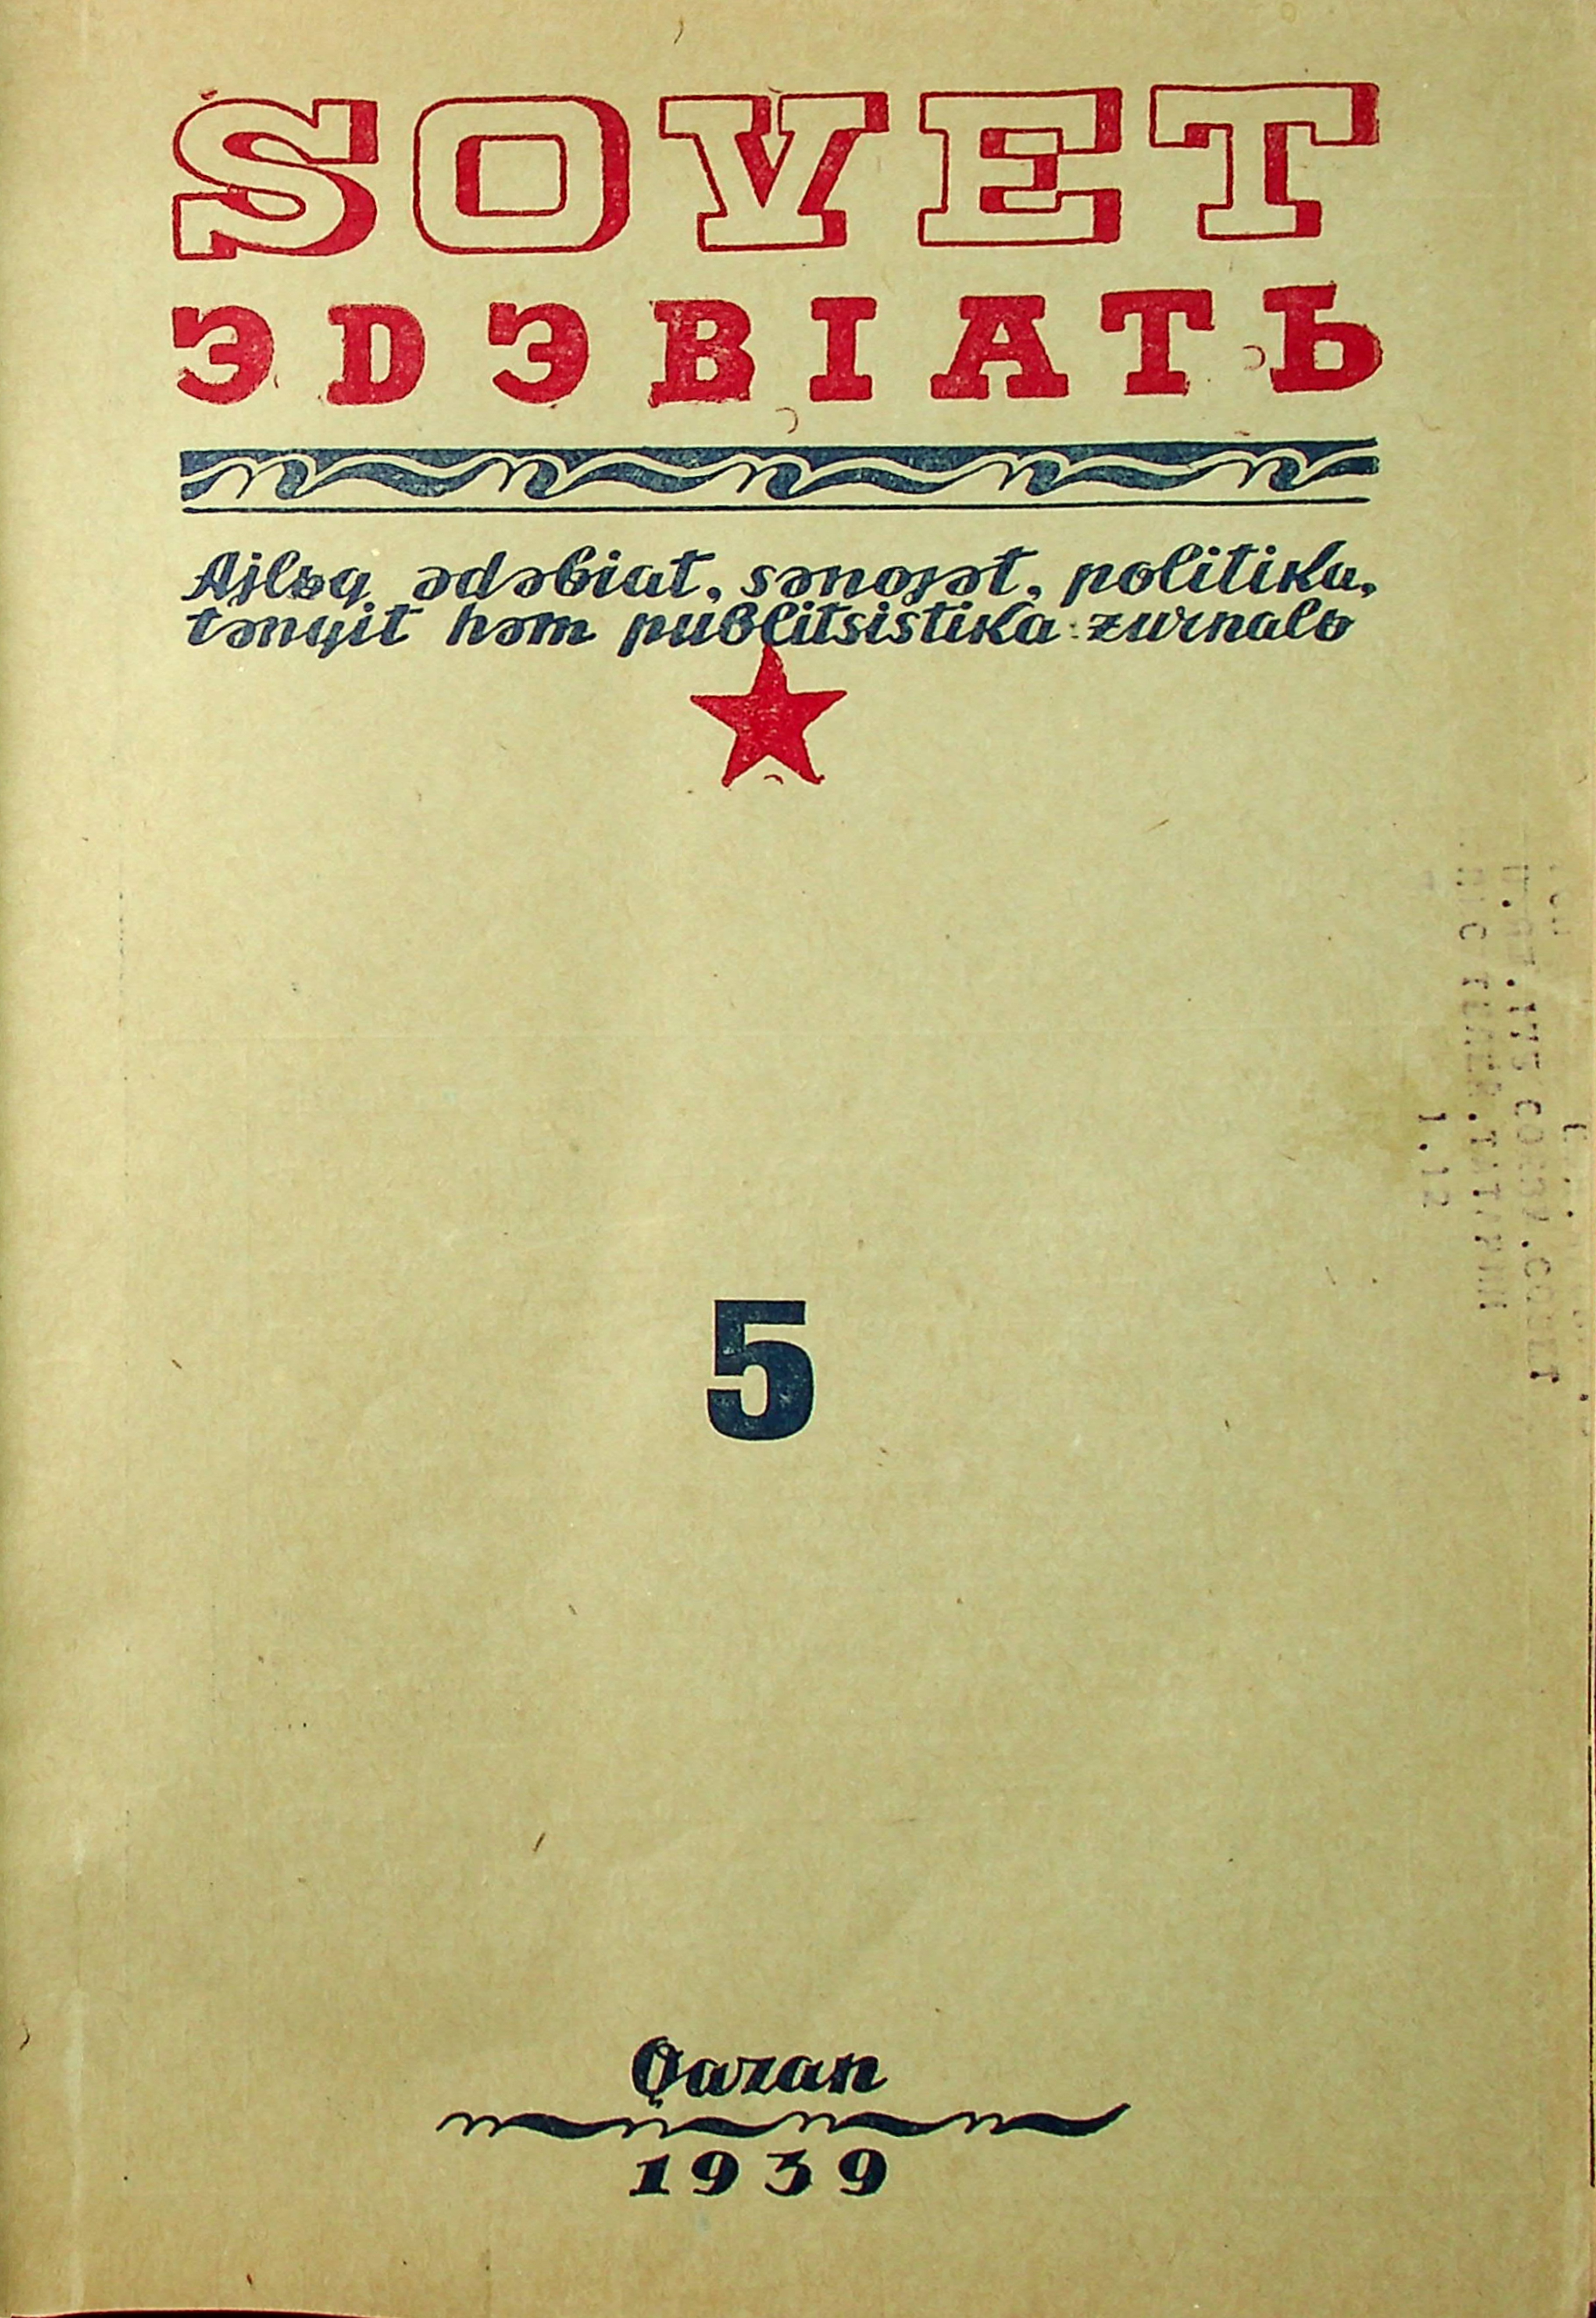 Фото журнала 1939 года. Выпуск номер 5